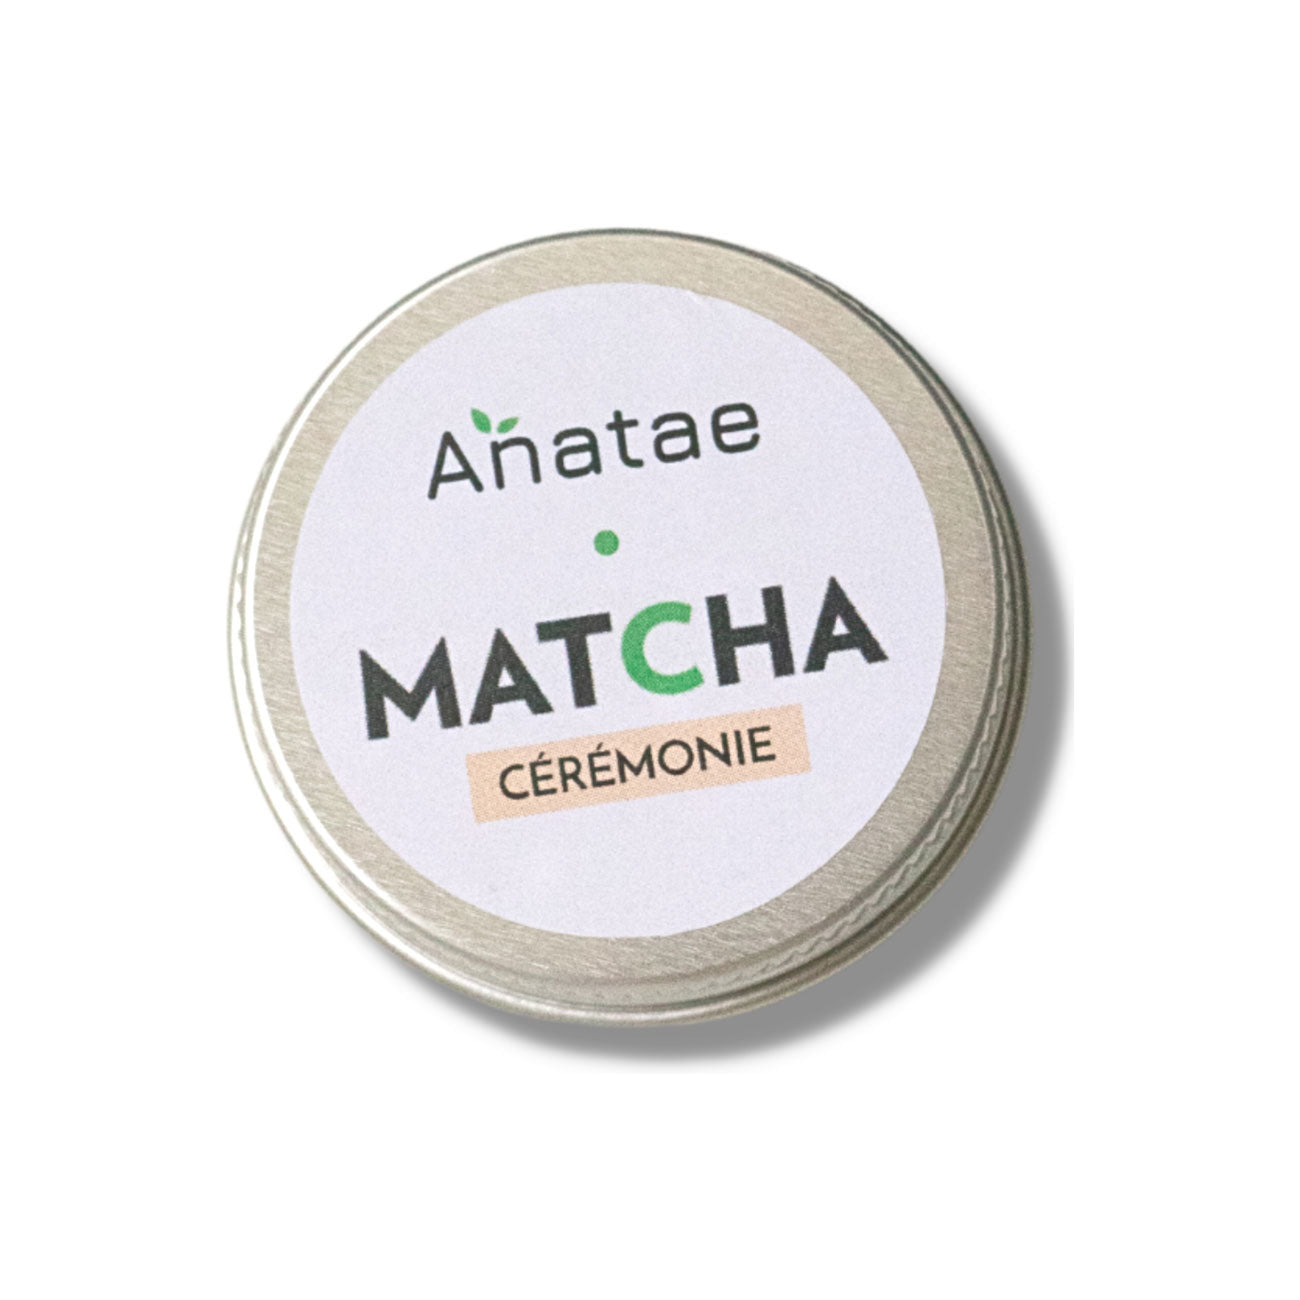 Echantillon thé matcha Anatae - Offert